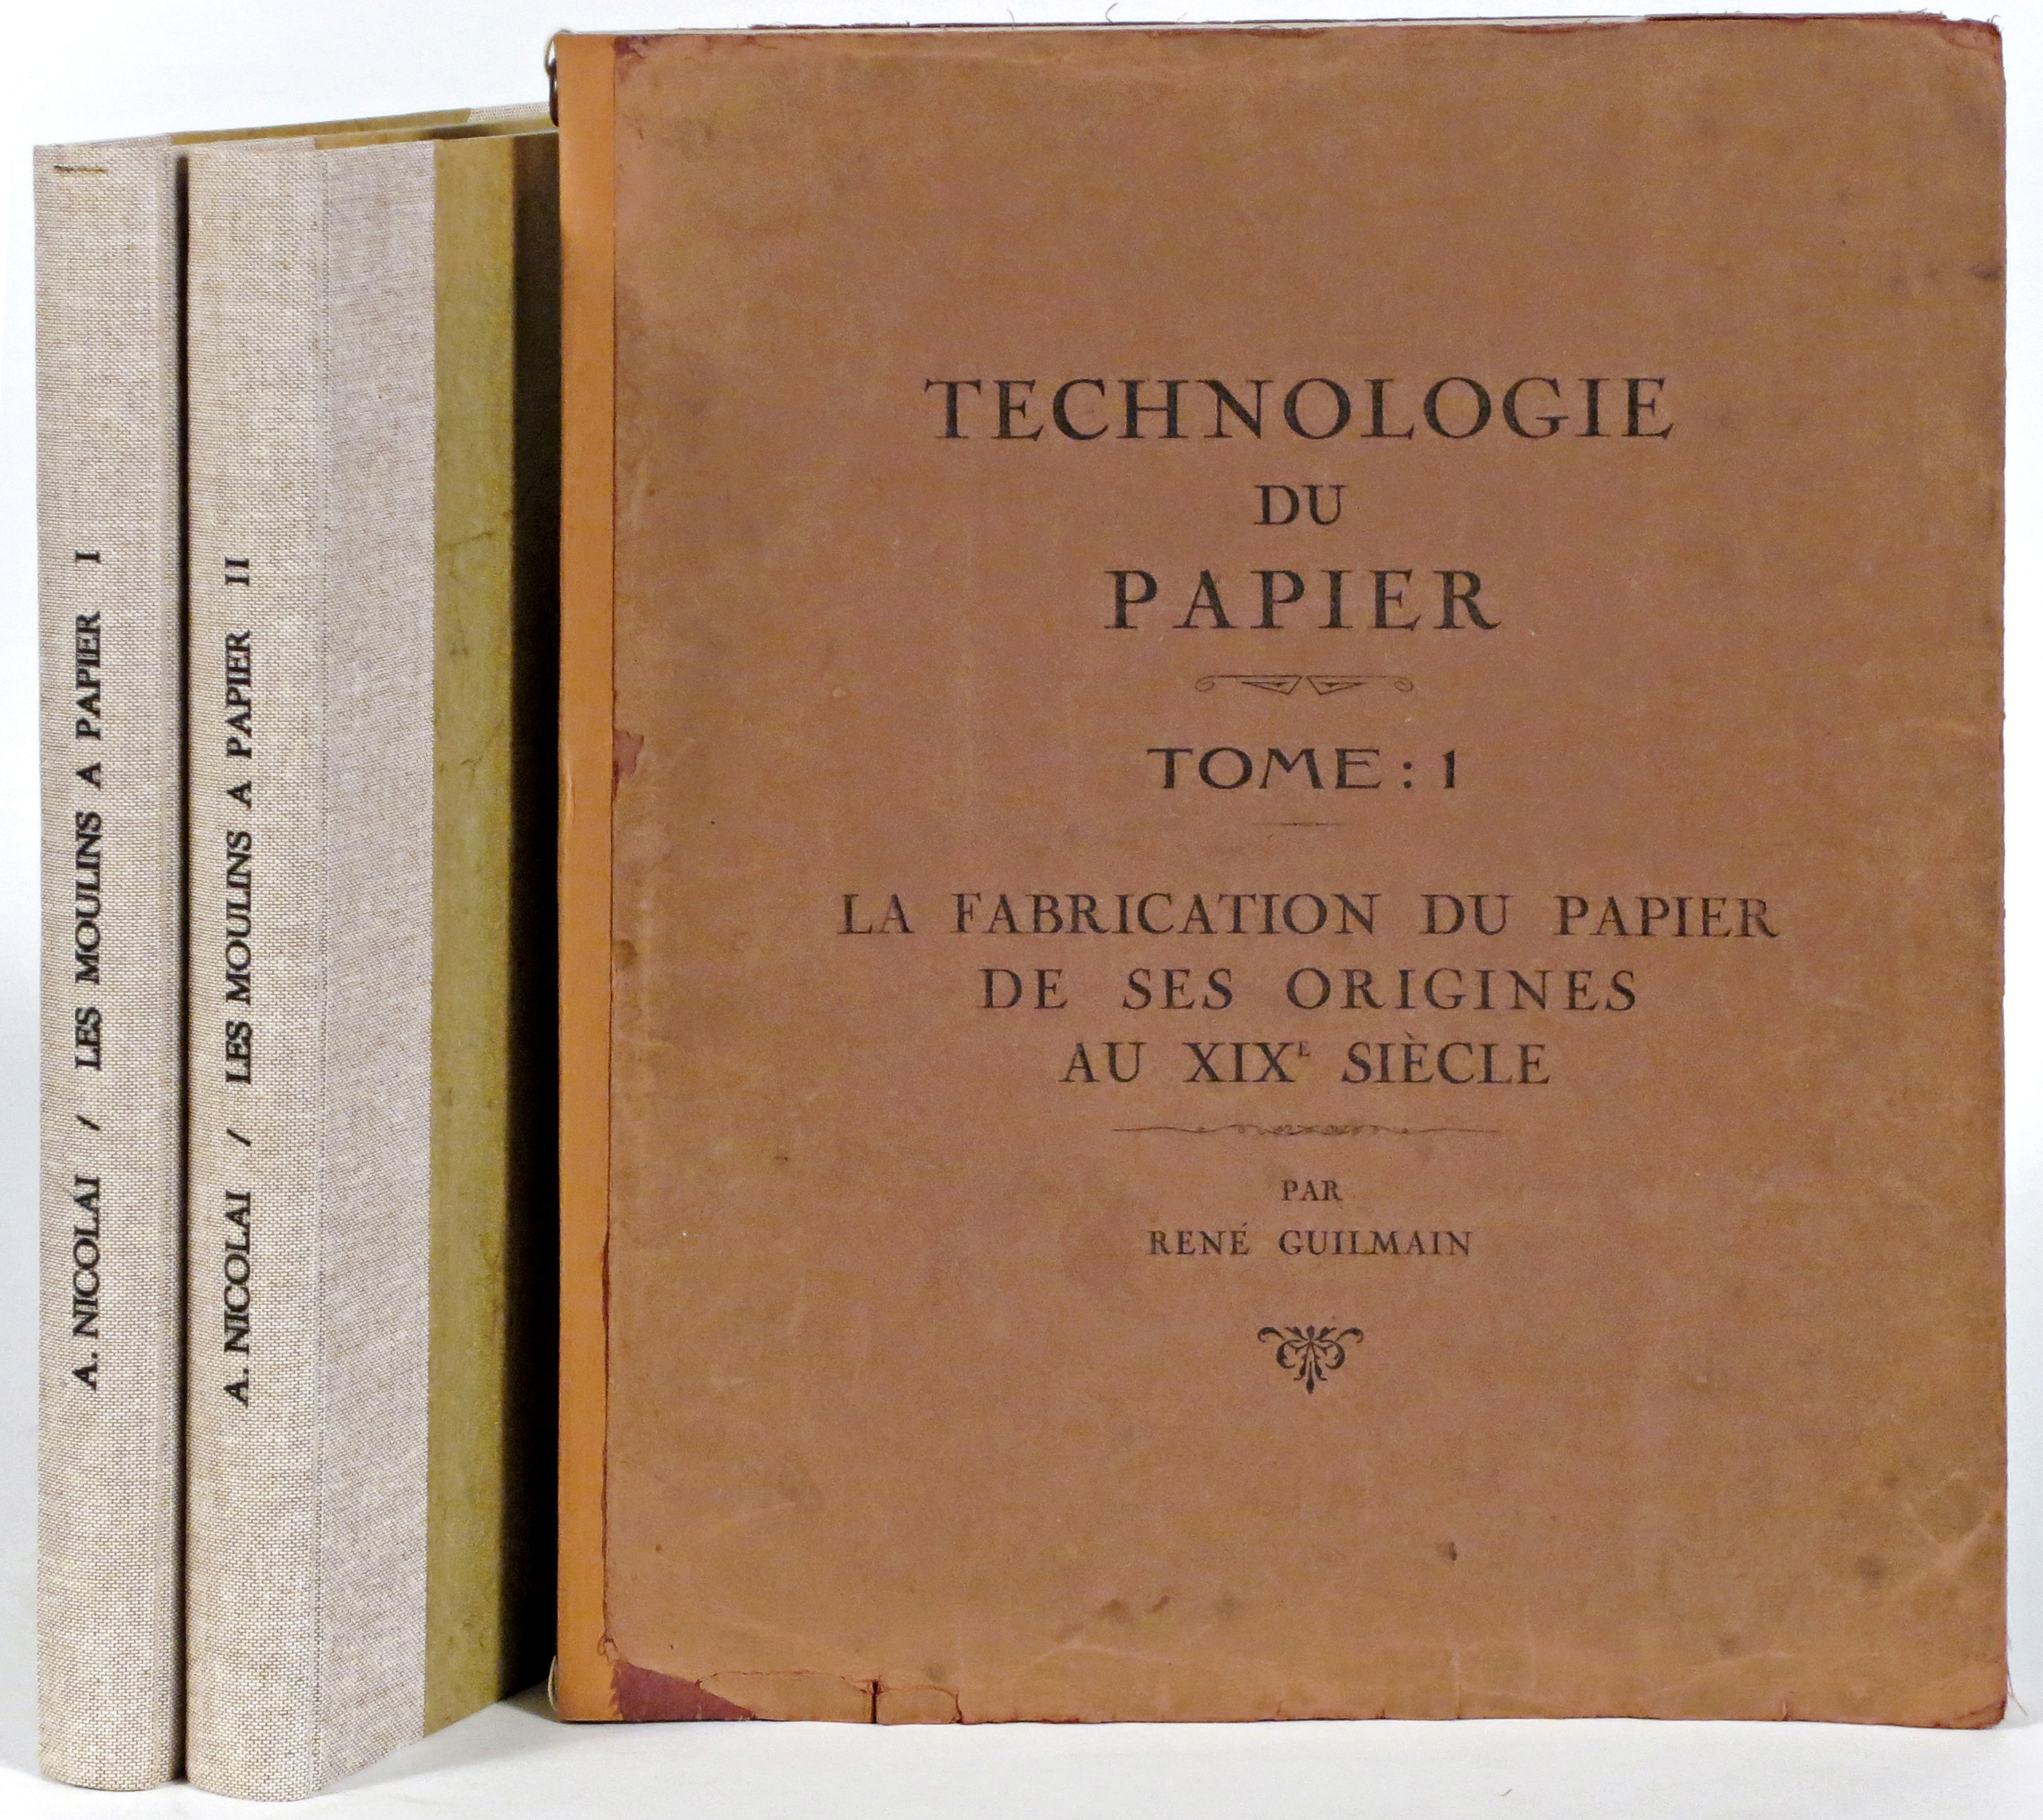 (Papier) - NICOLAÏ, Alexandre.- Histoire des moulins à papier du Sud-Ouest de la France. 1300-